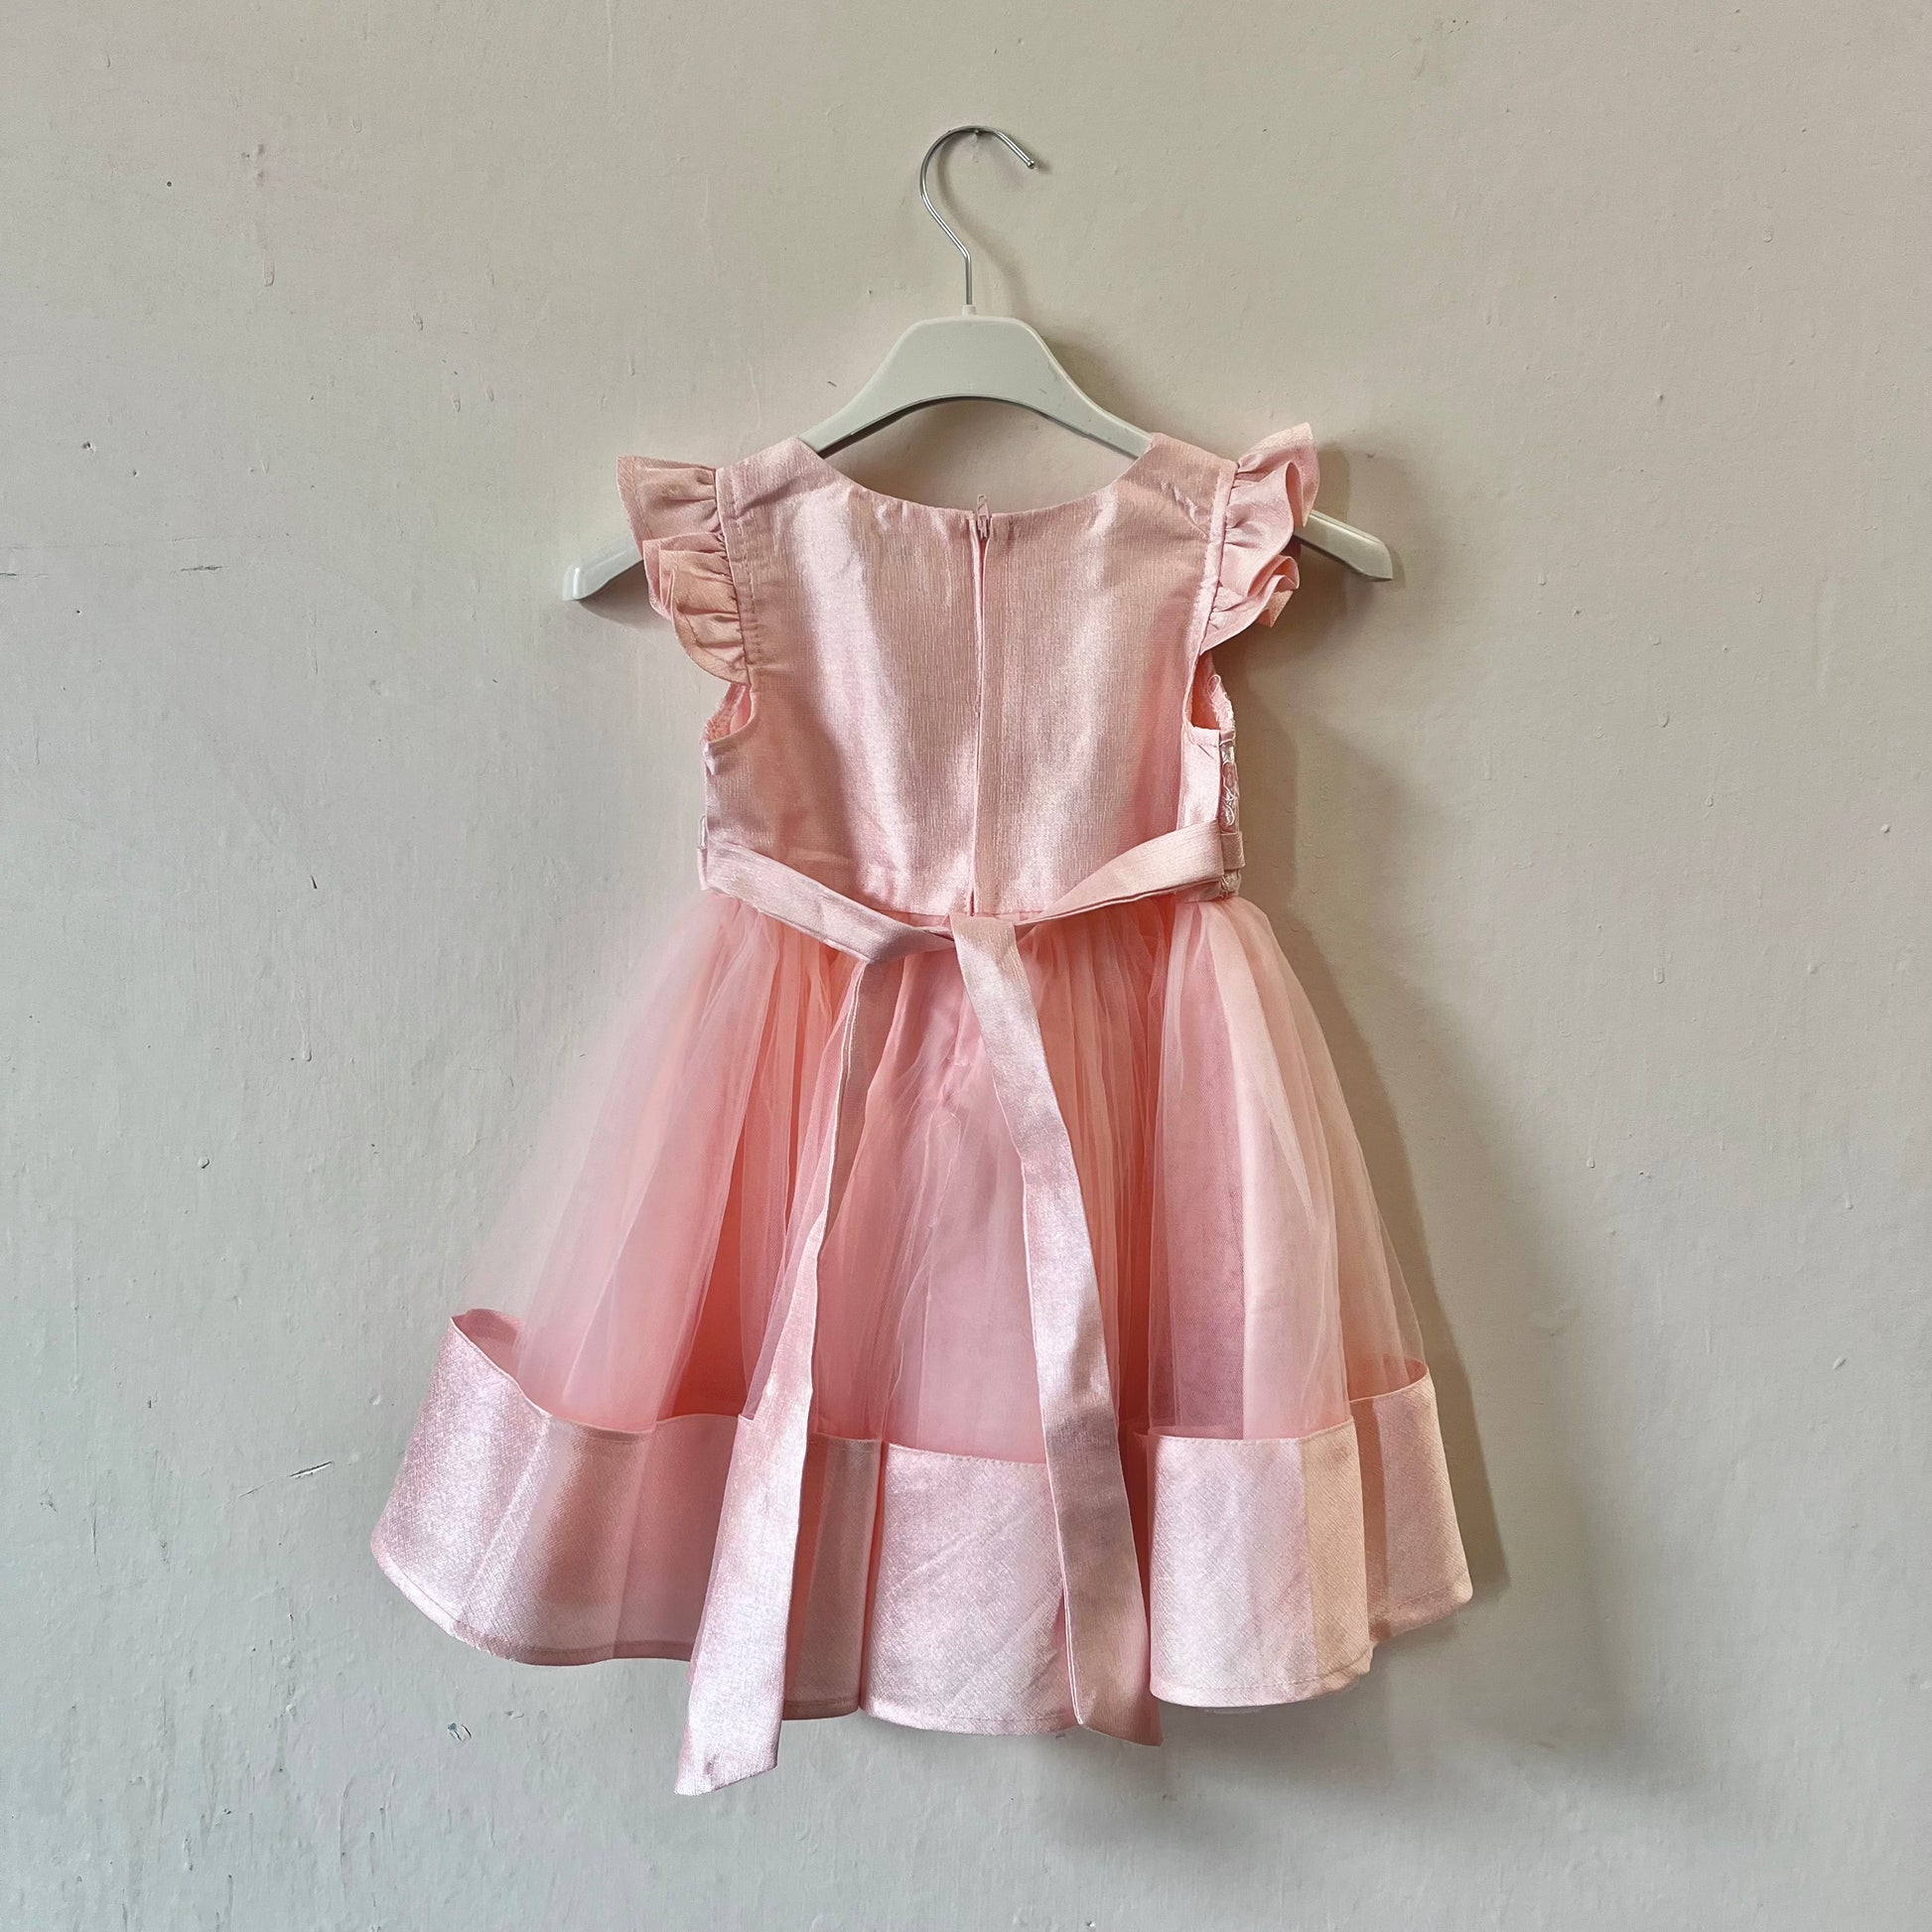 Dívčí růžové krajkované šaty s mašlí visící na věšáku přední stranou ke zdi